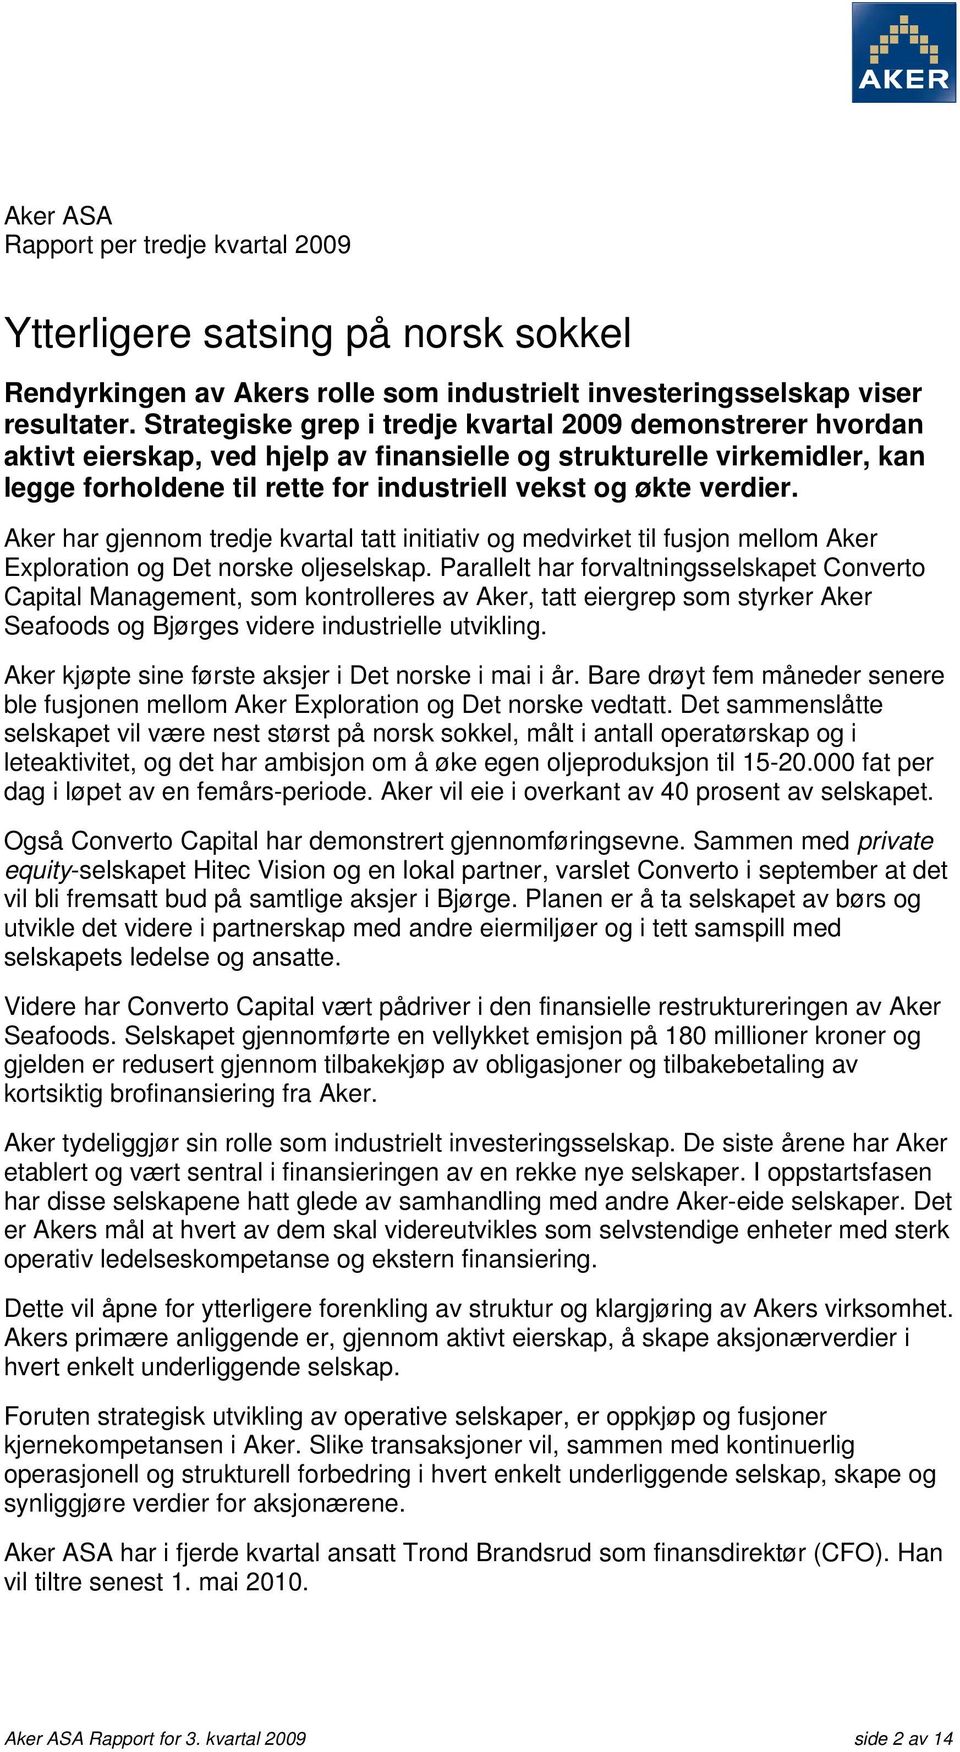 Aker har gjennom tredje kvartal tatt initiativ og medvirket til fusjon mellom Aker Exploration og Det norske oljeselskap.